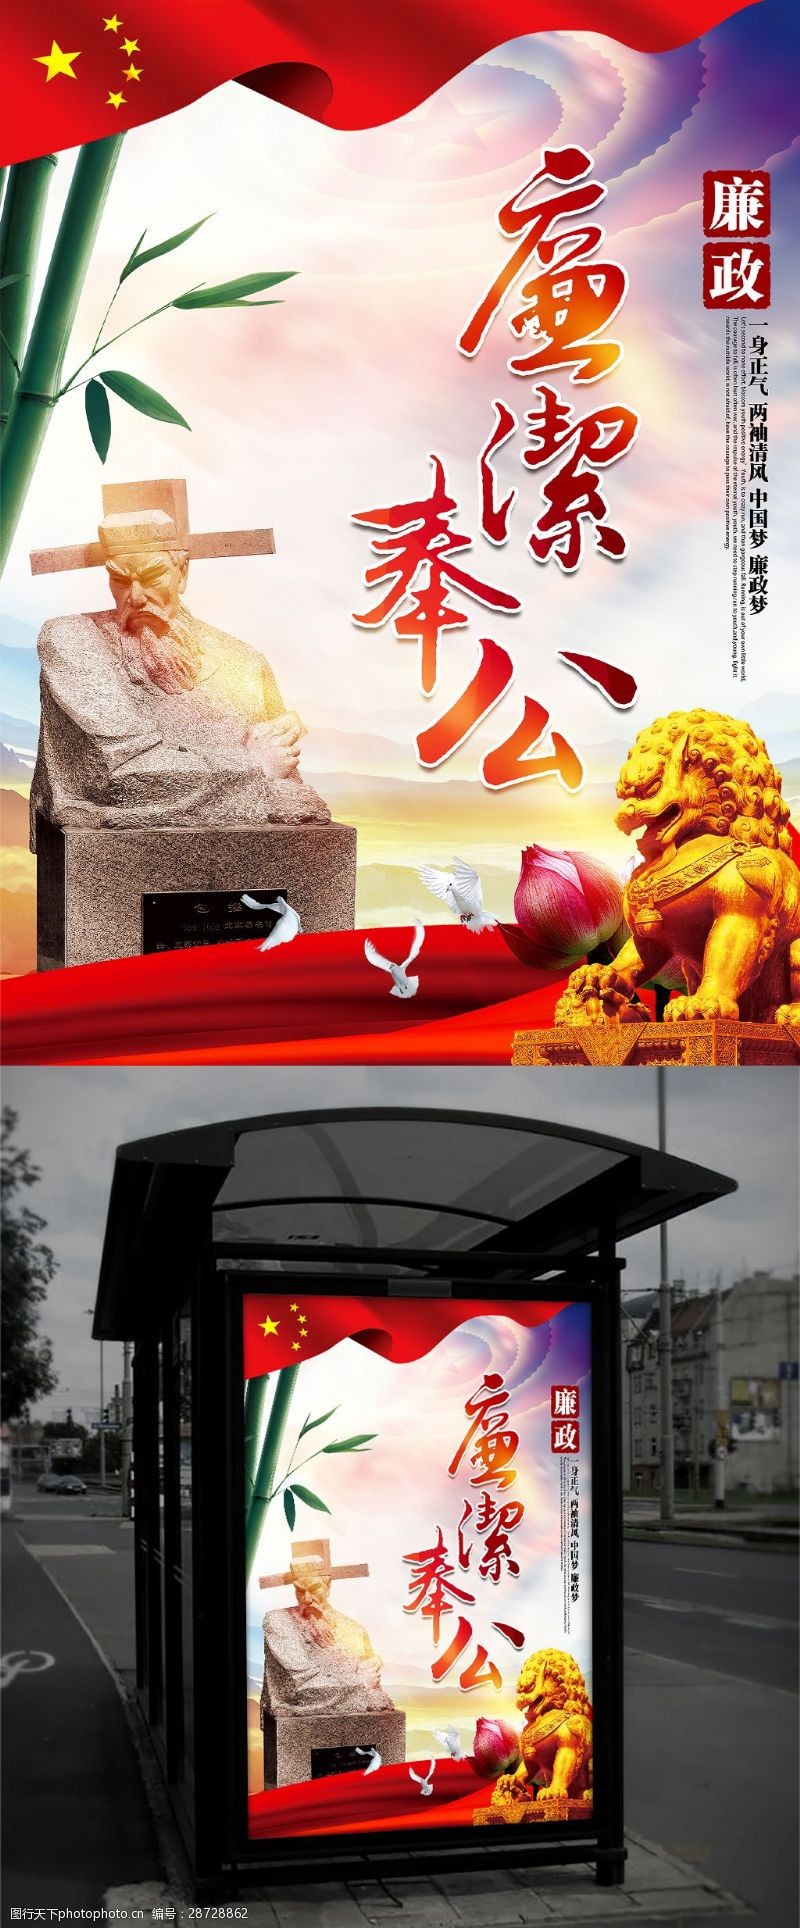 语主美廉洁奉公唯美中国风廉政文化主题海报设计